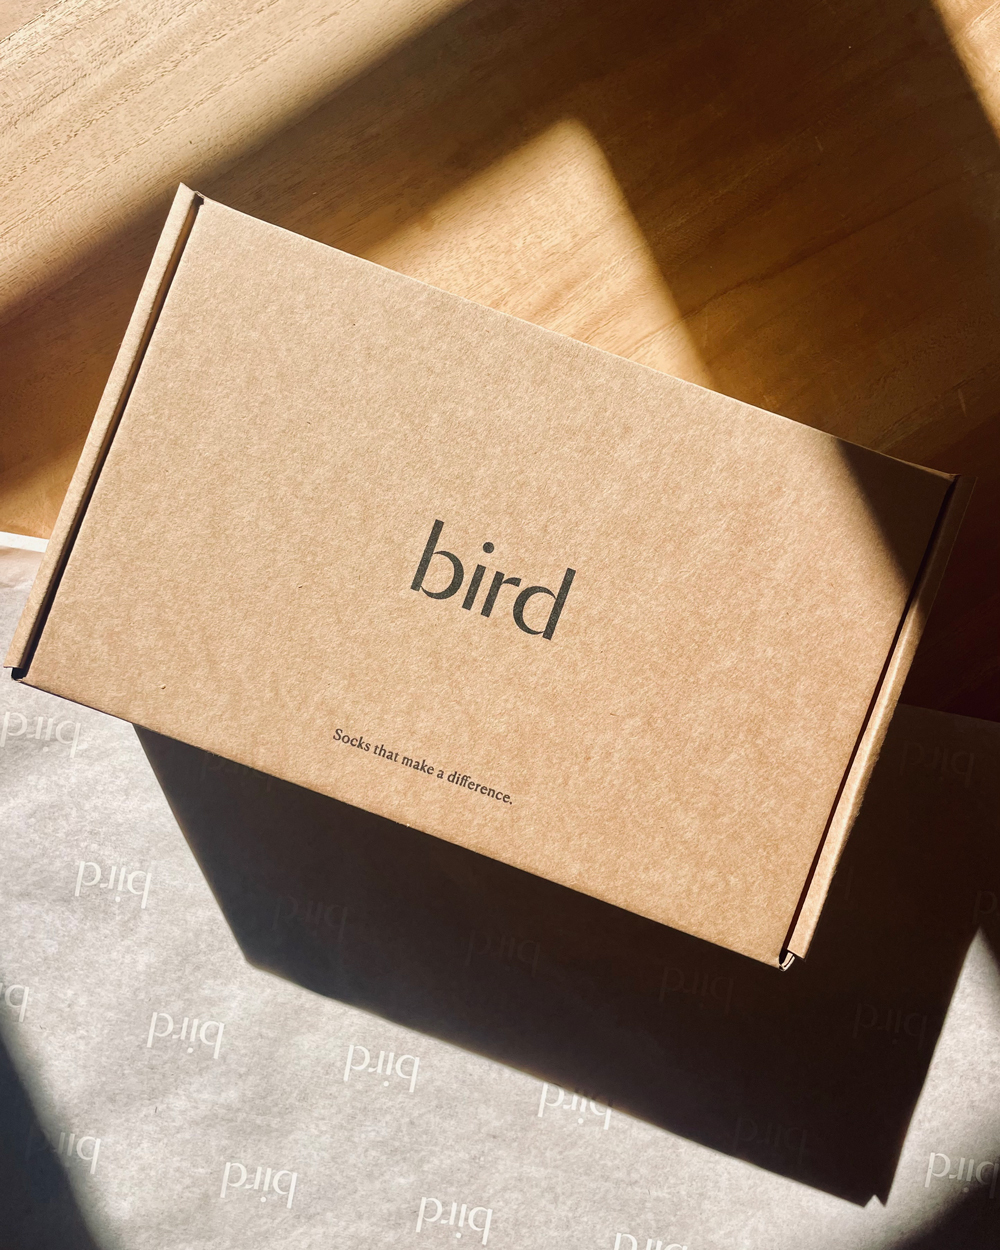 bird-box-1